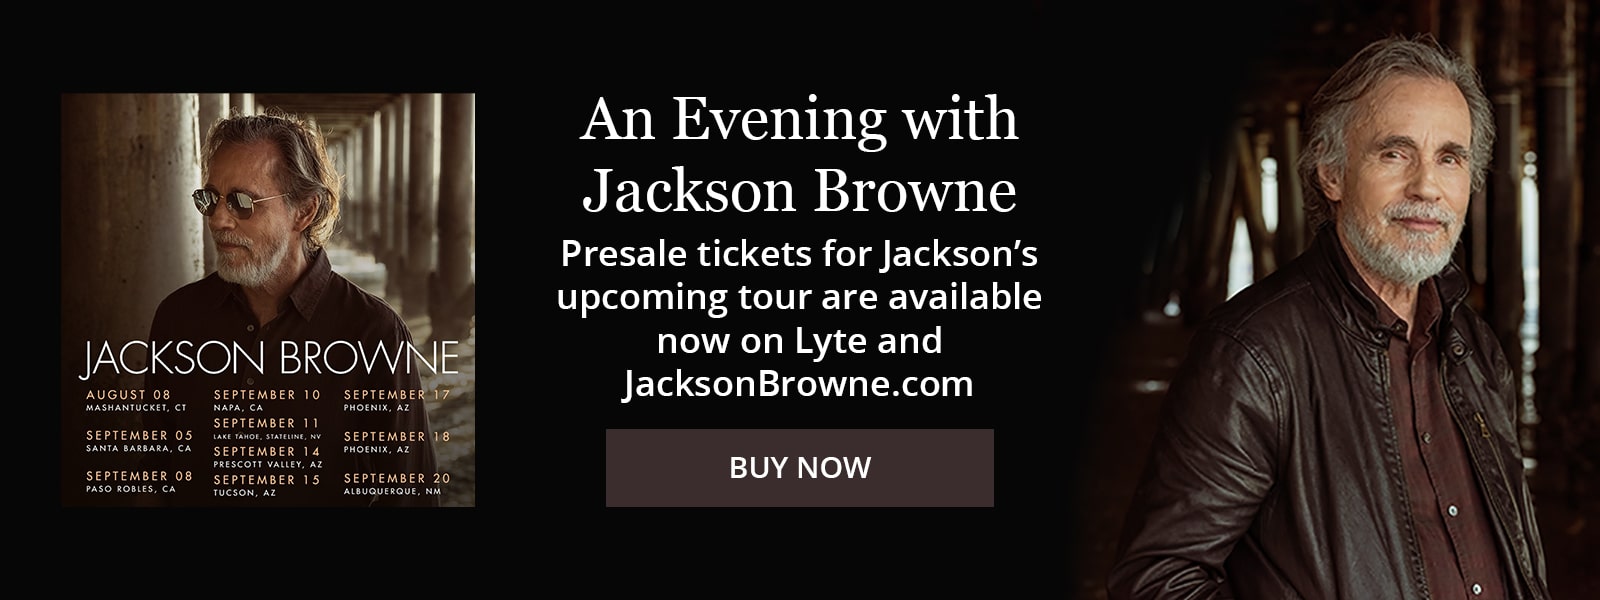 Jackson Browne Banner Updatedd